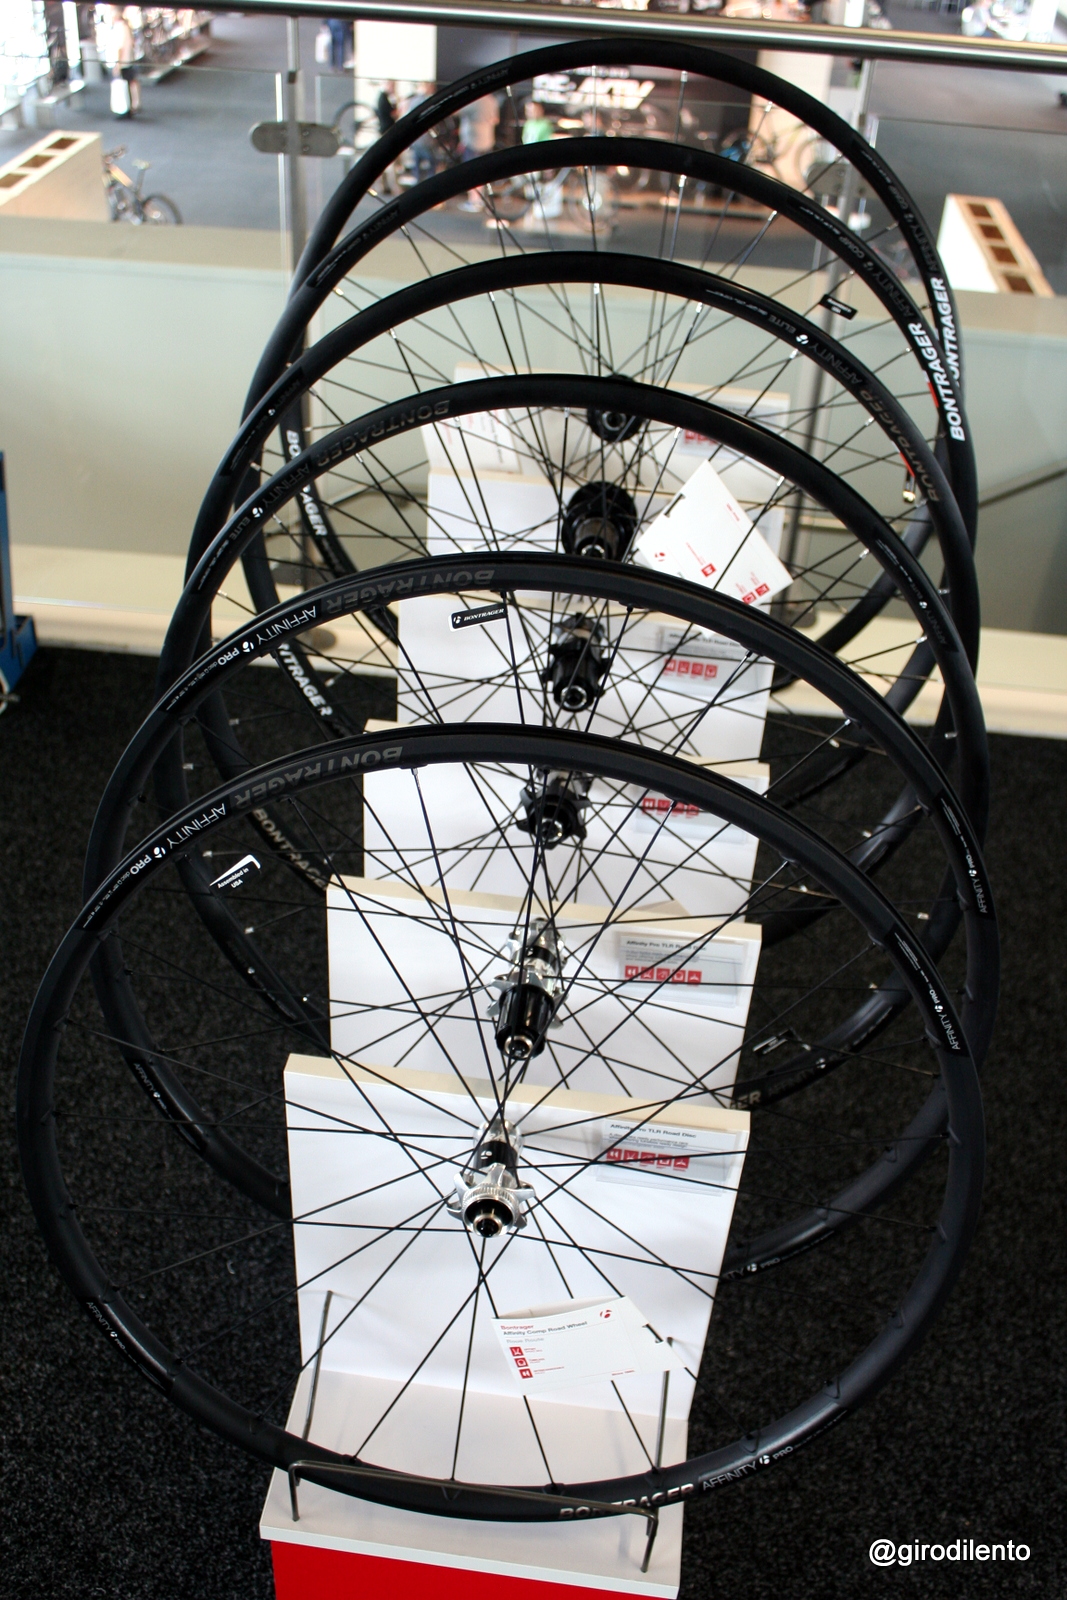 Bontrager's new Affinity range of road disc wheelsets